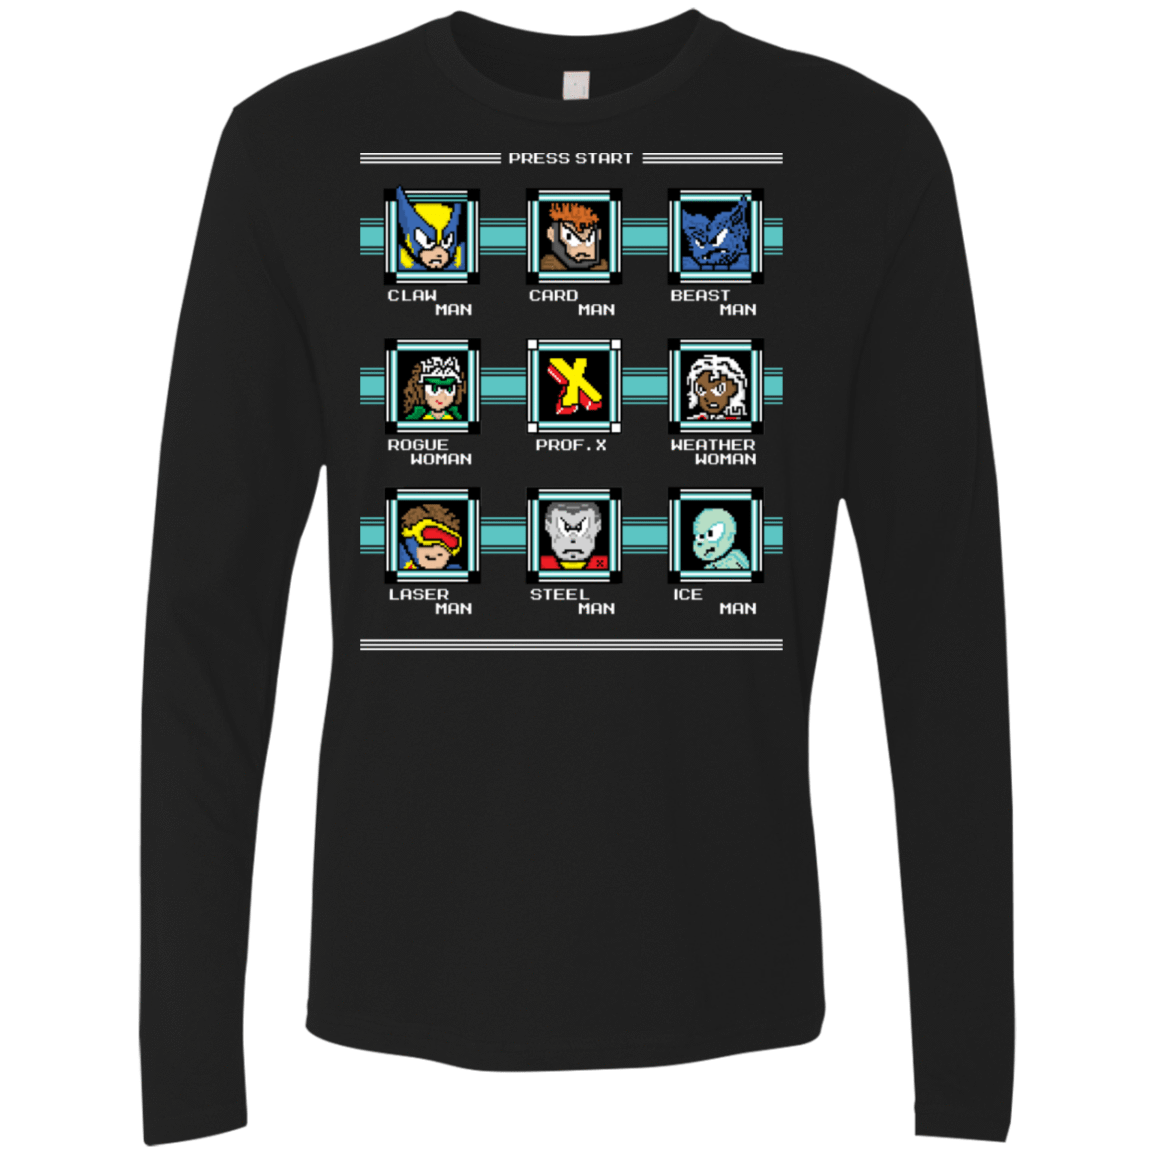 T-Shirts Black / S Mega X-Man Men's Premium Long Sleeve